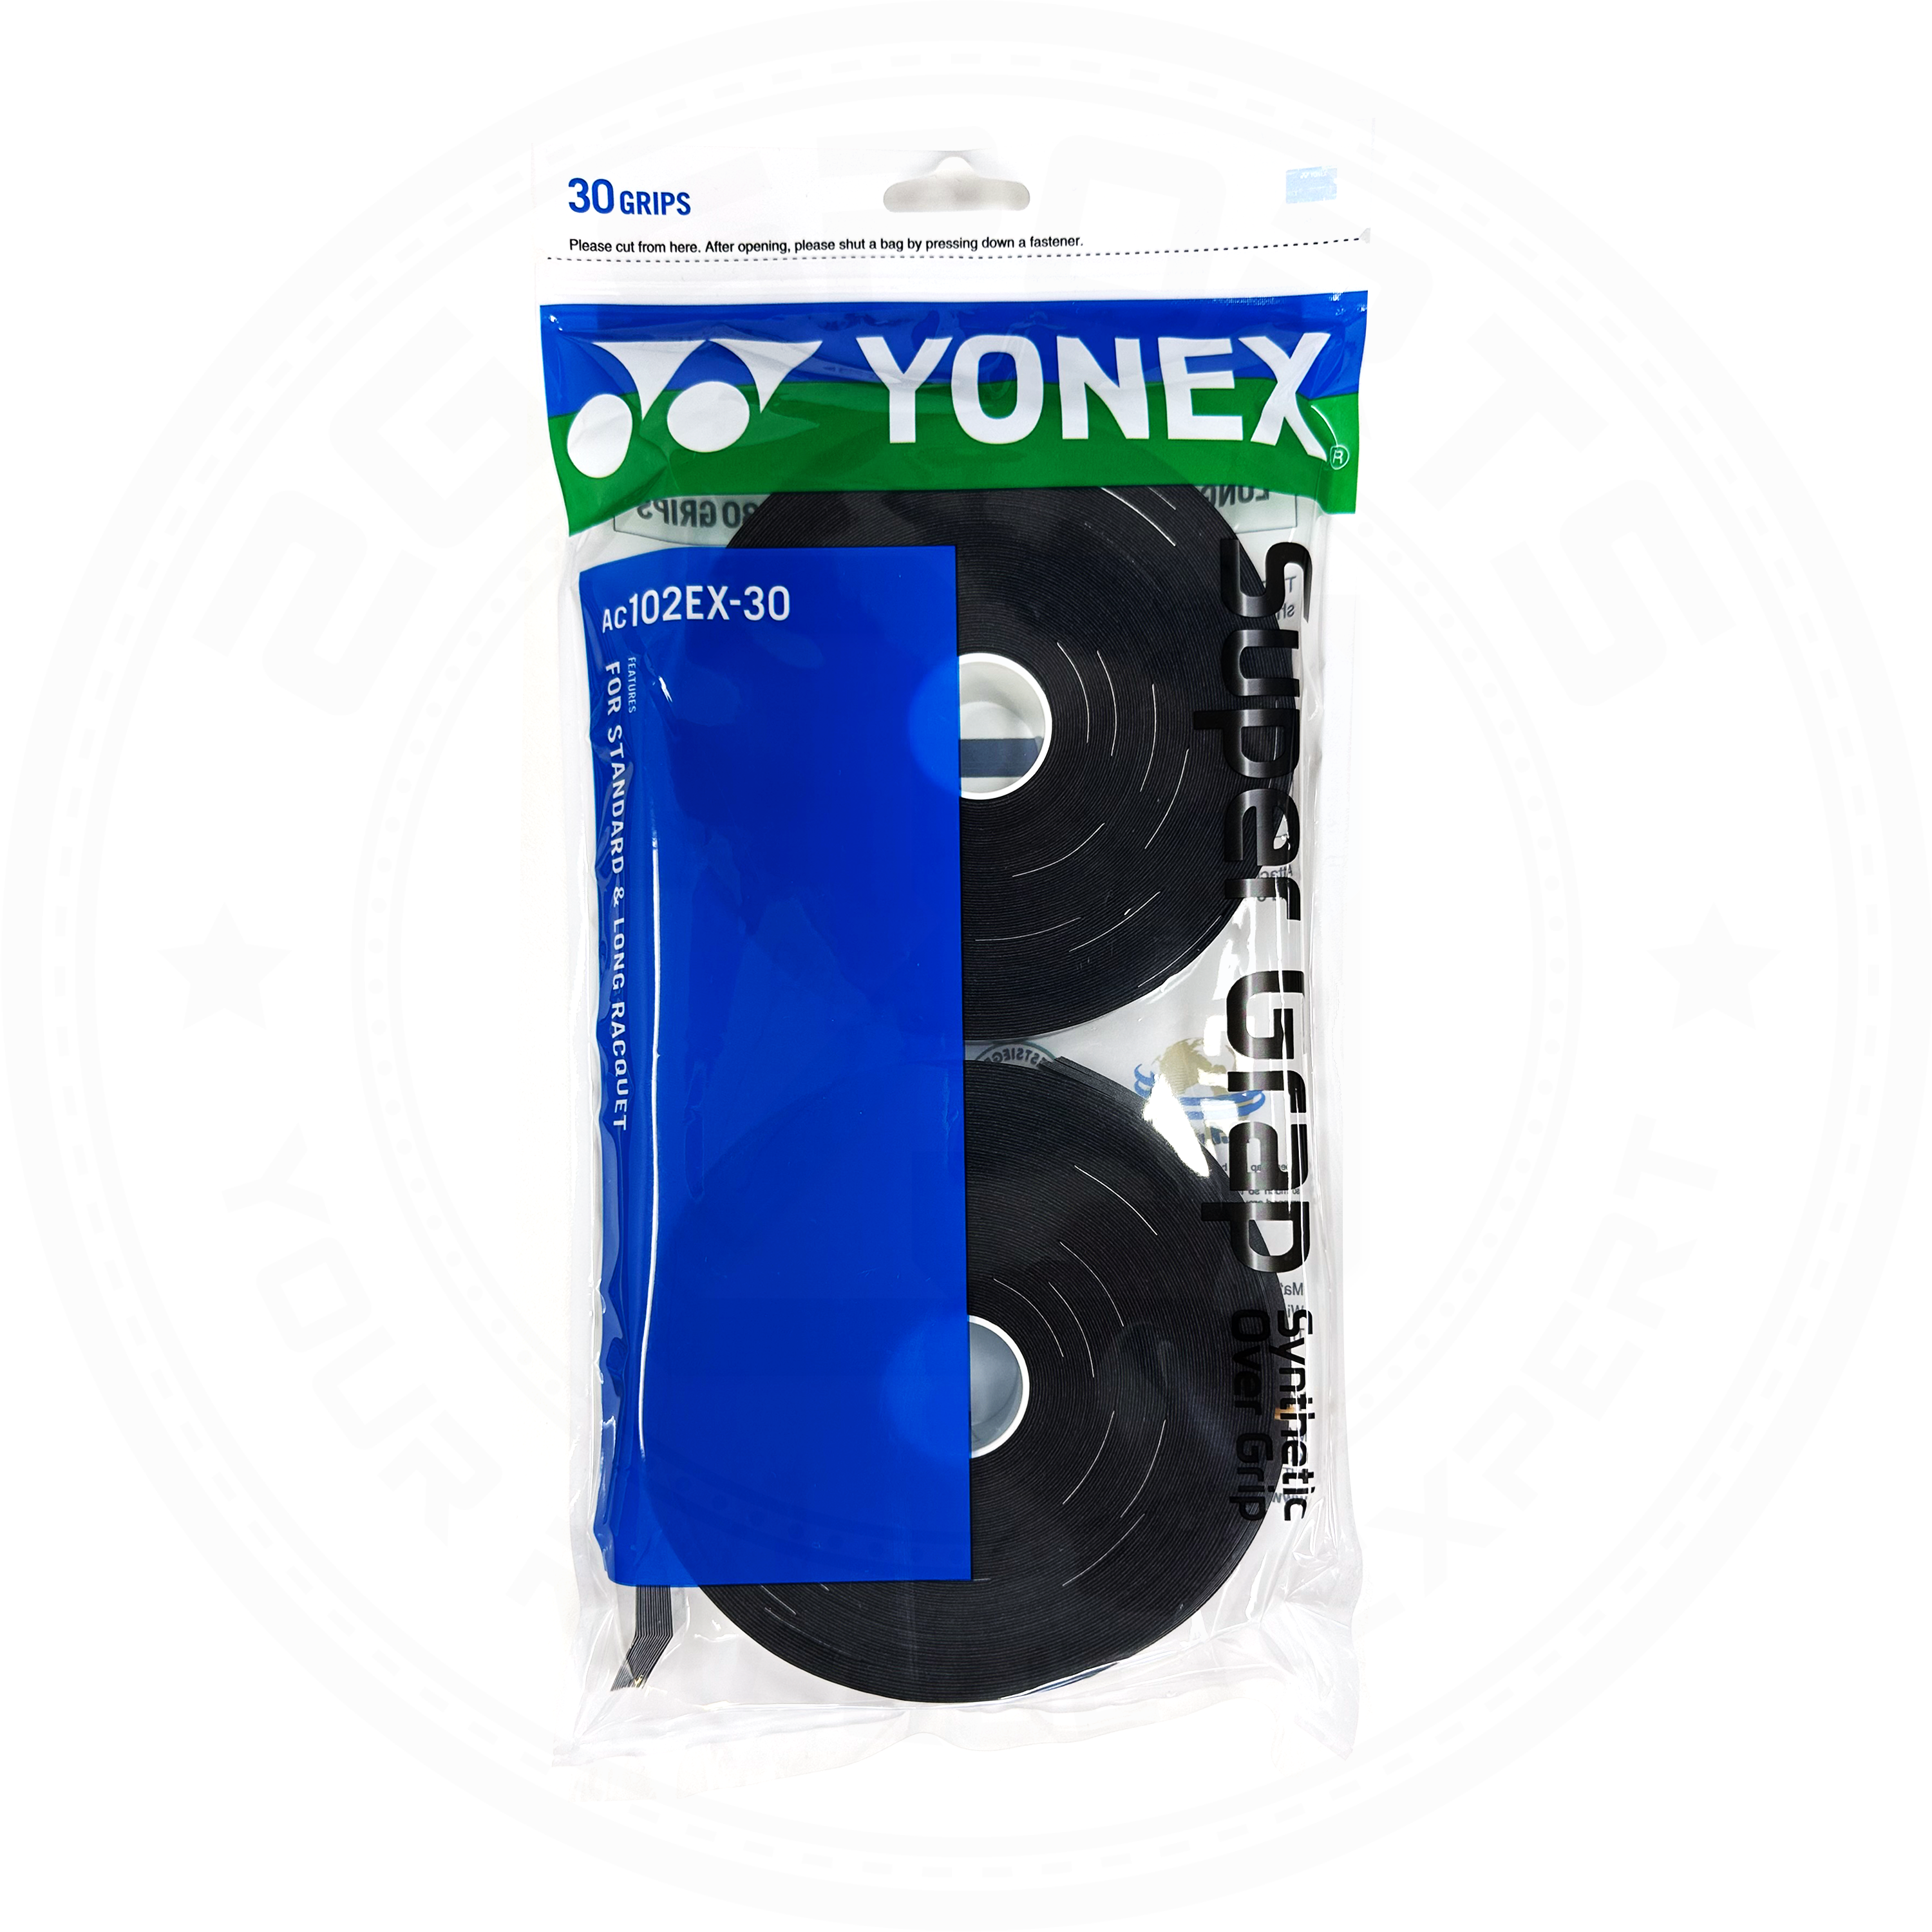 Yonex Super Grap AC102EX-30(30 Wraps) White/ Yellow/ Black